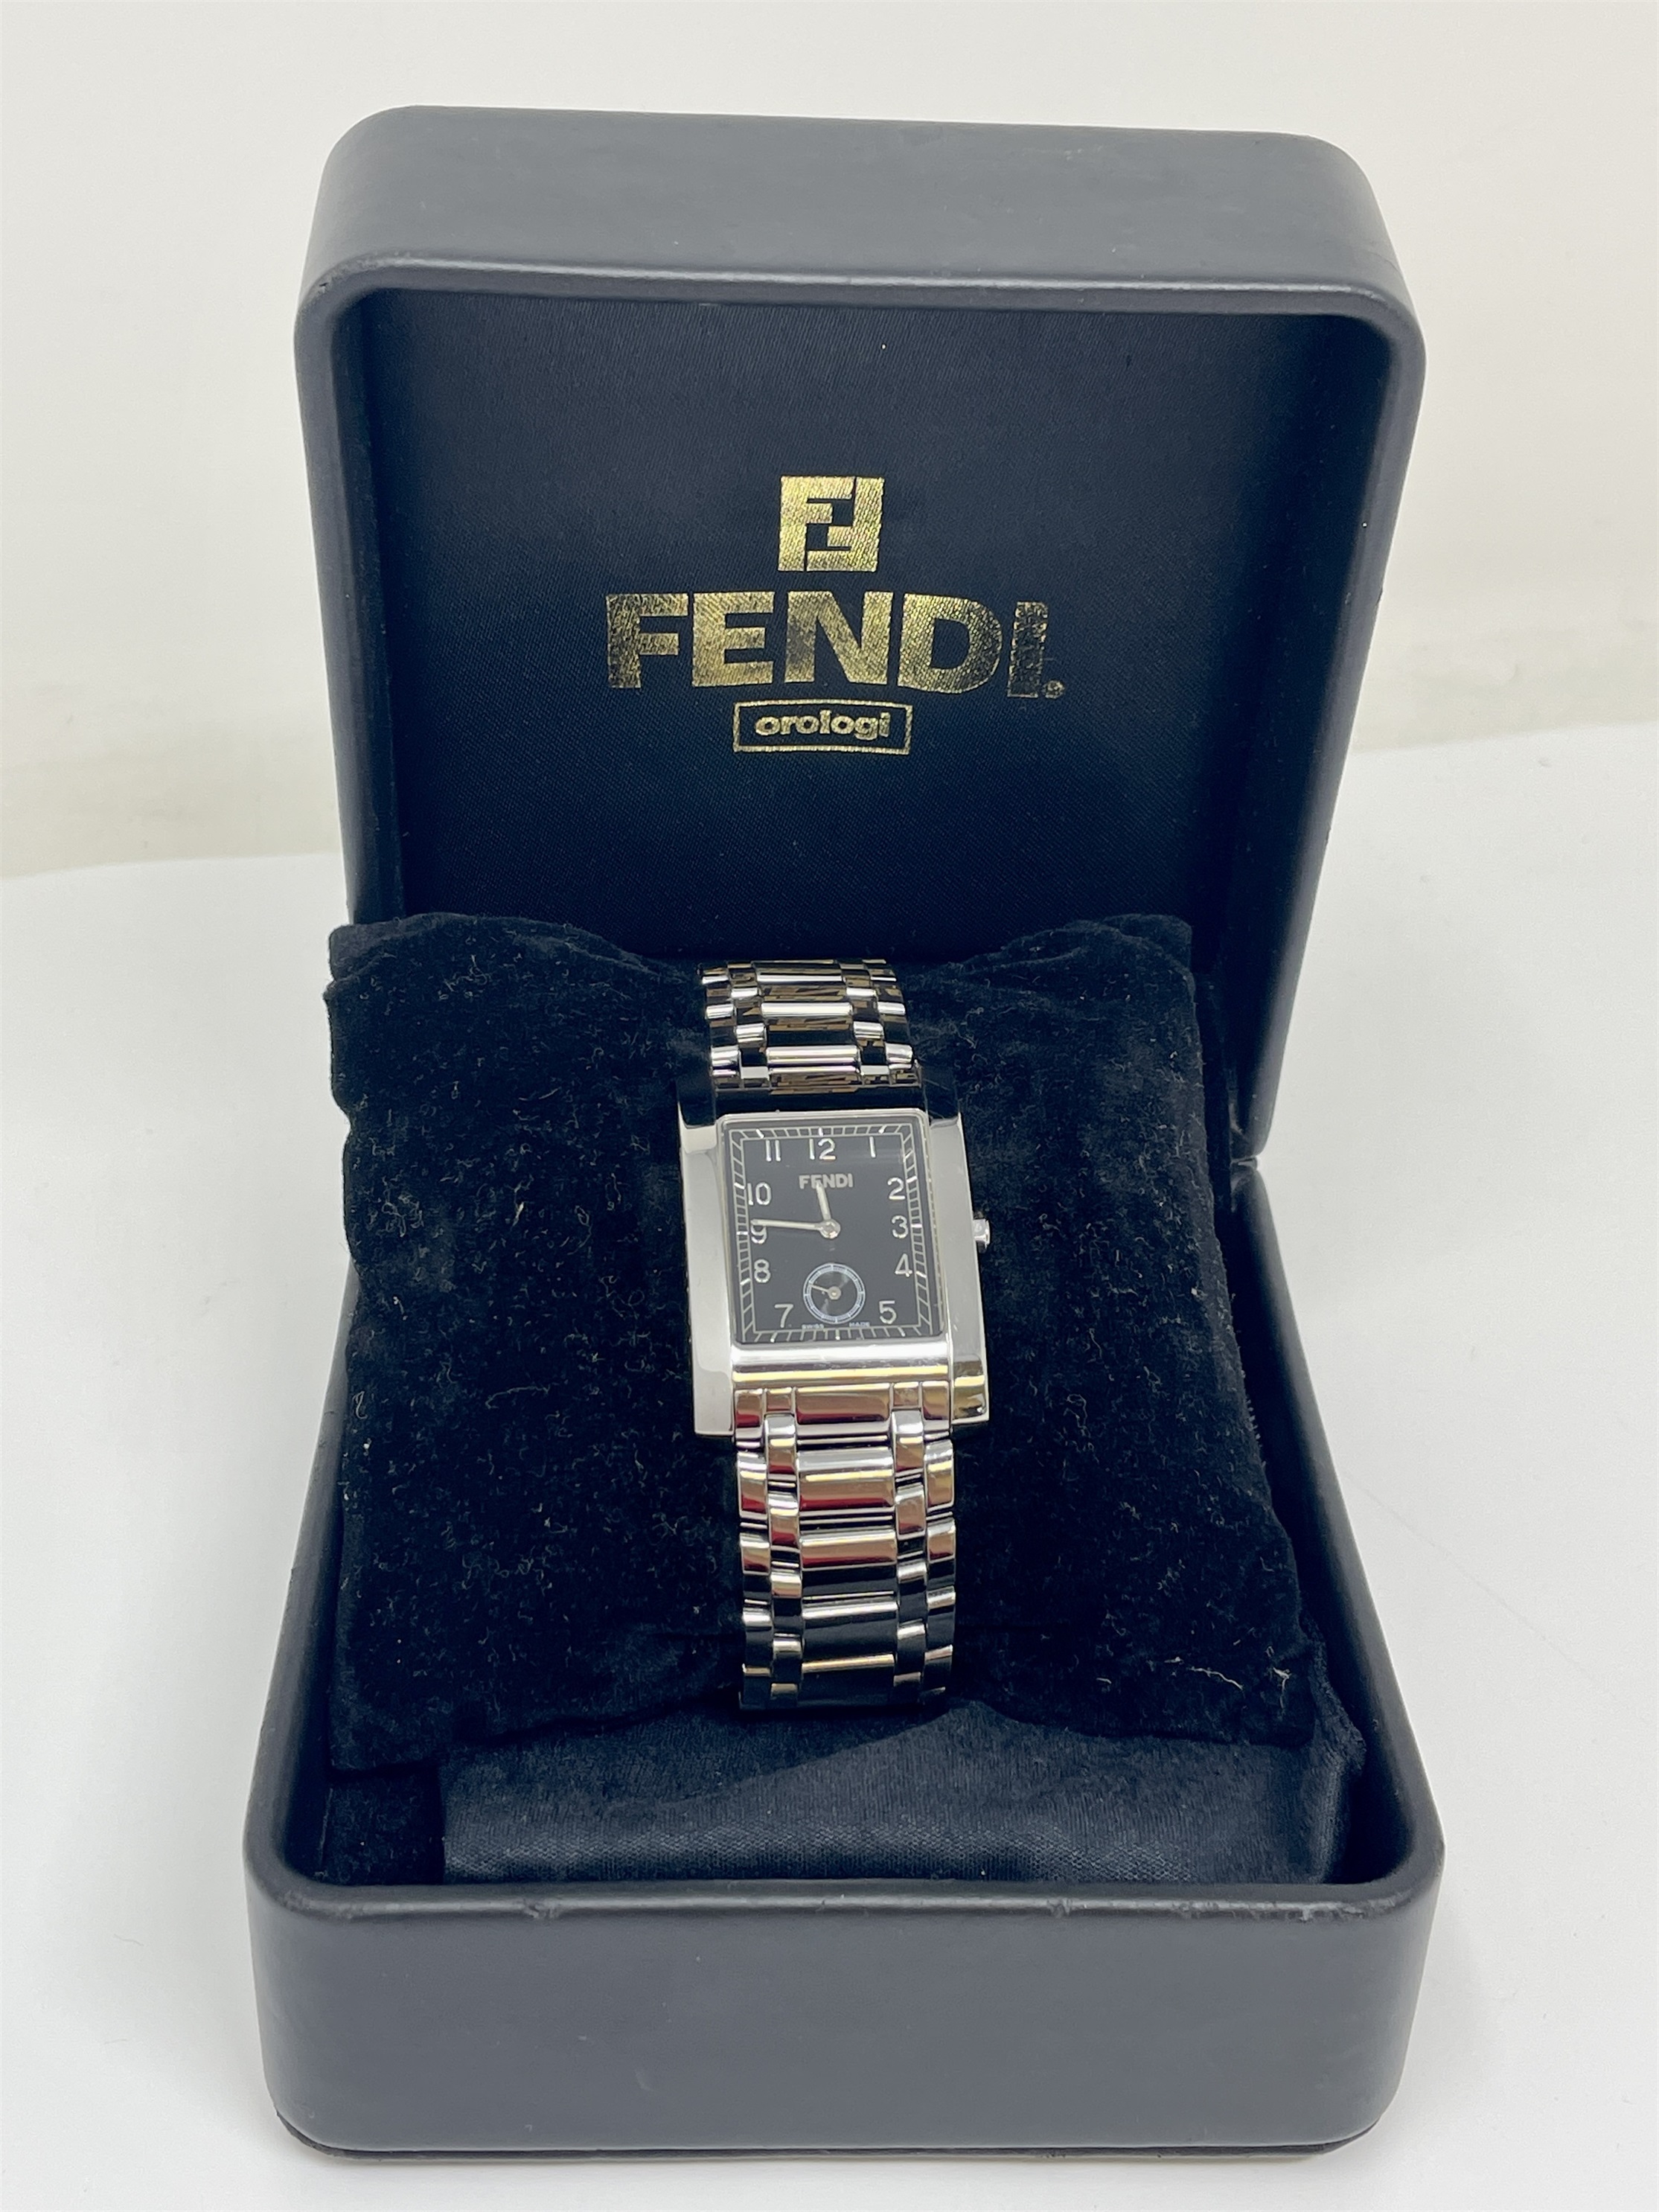 Relógio Fendi Orologi 7000g Swiss Made Novo Original